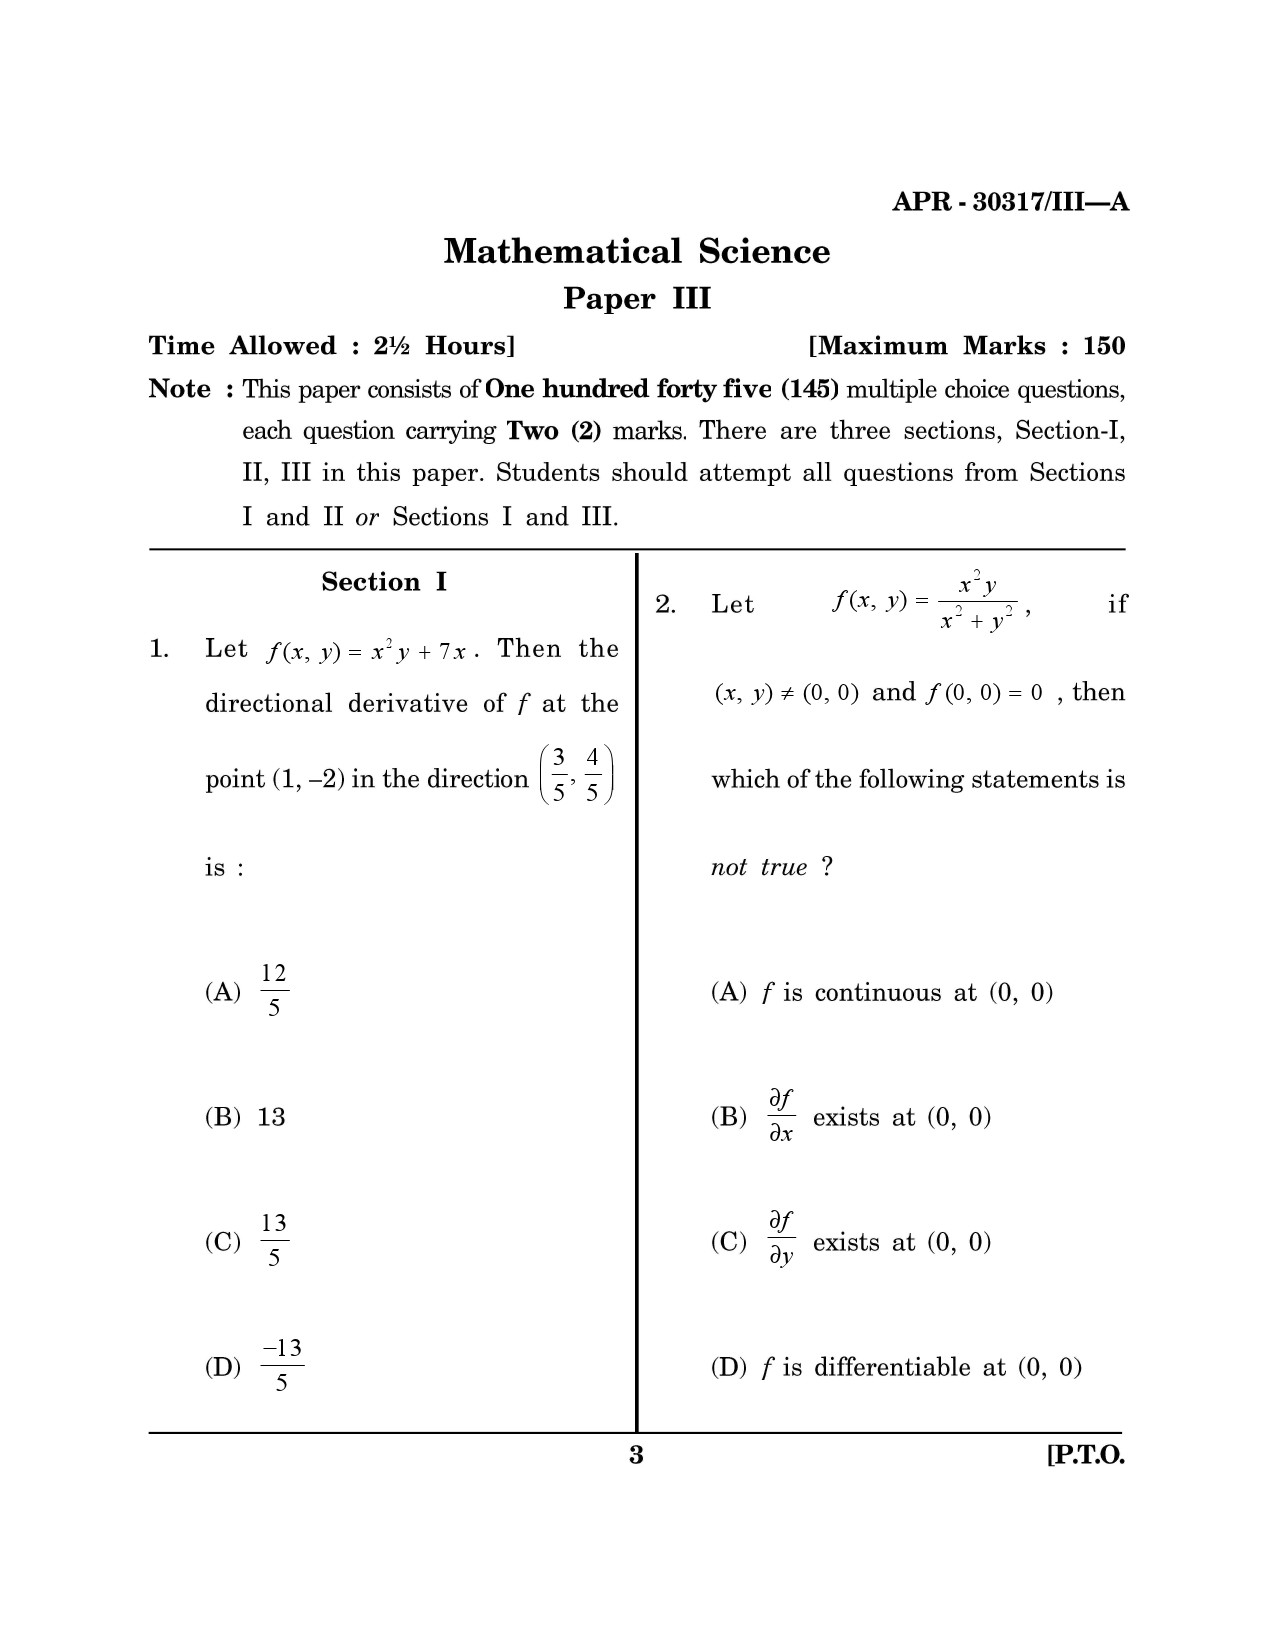 Maharashtra SET Mathematical Sciences Question Paper III April 2017 2